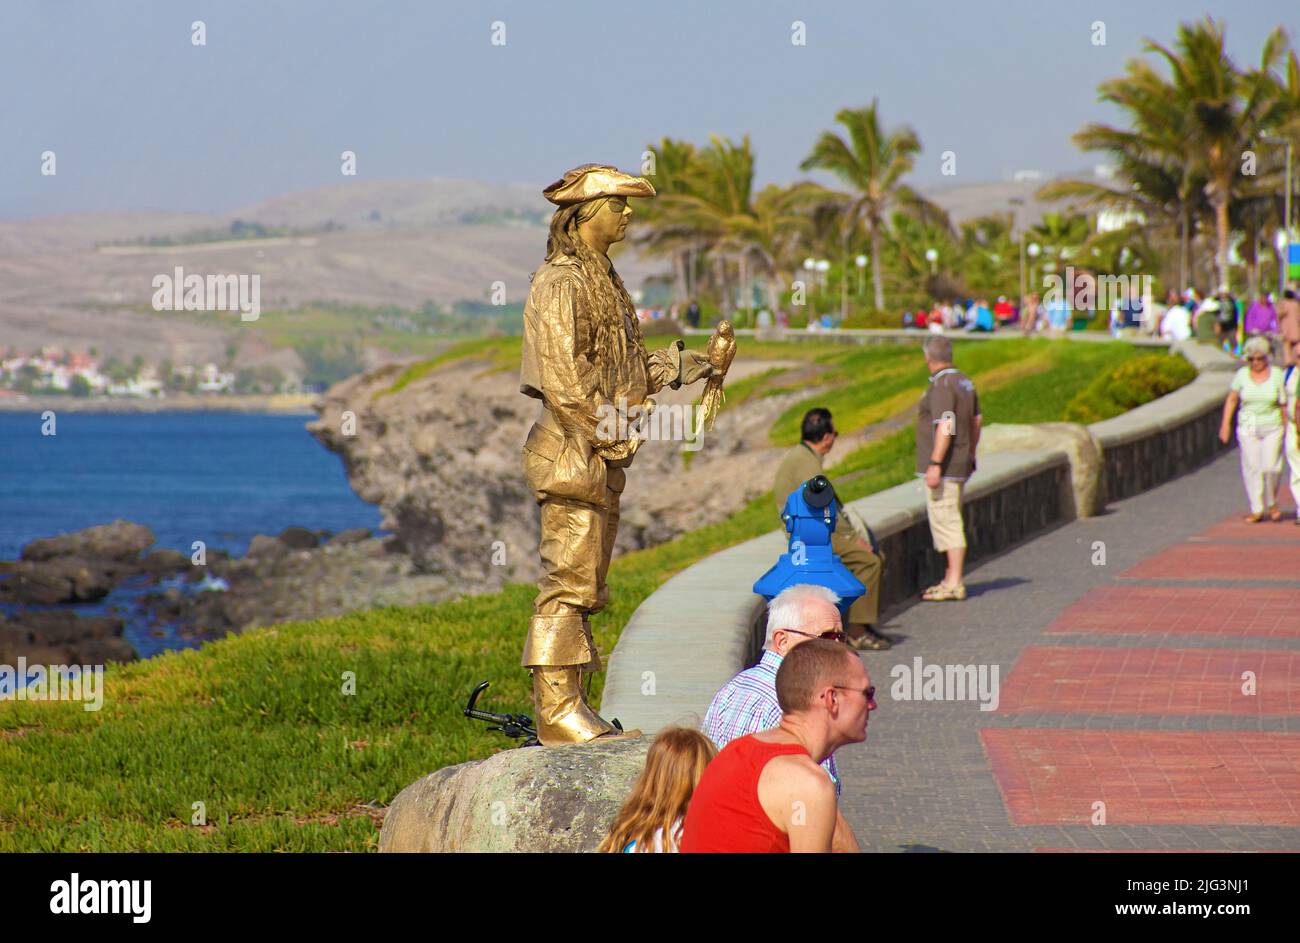 Statue humaine, interprète de rue sur le Paseo de Meloneras, promenade maritime à Maspalomas, Grand Canary, îles Canaries, Espagne, Europe Banque D'Images